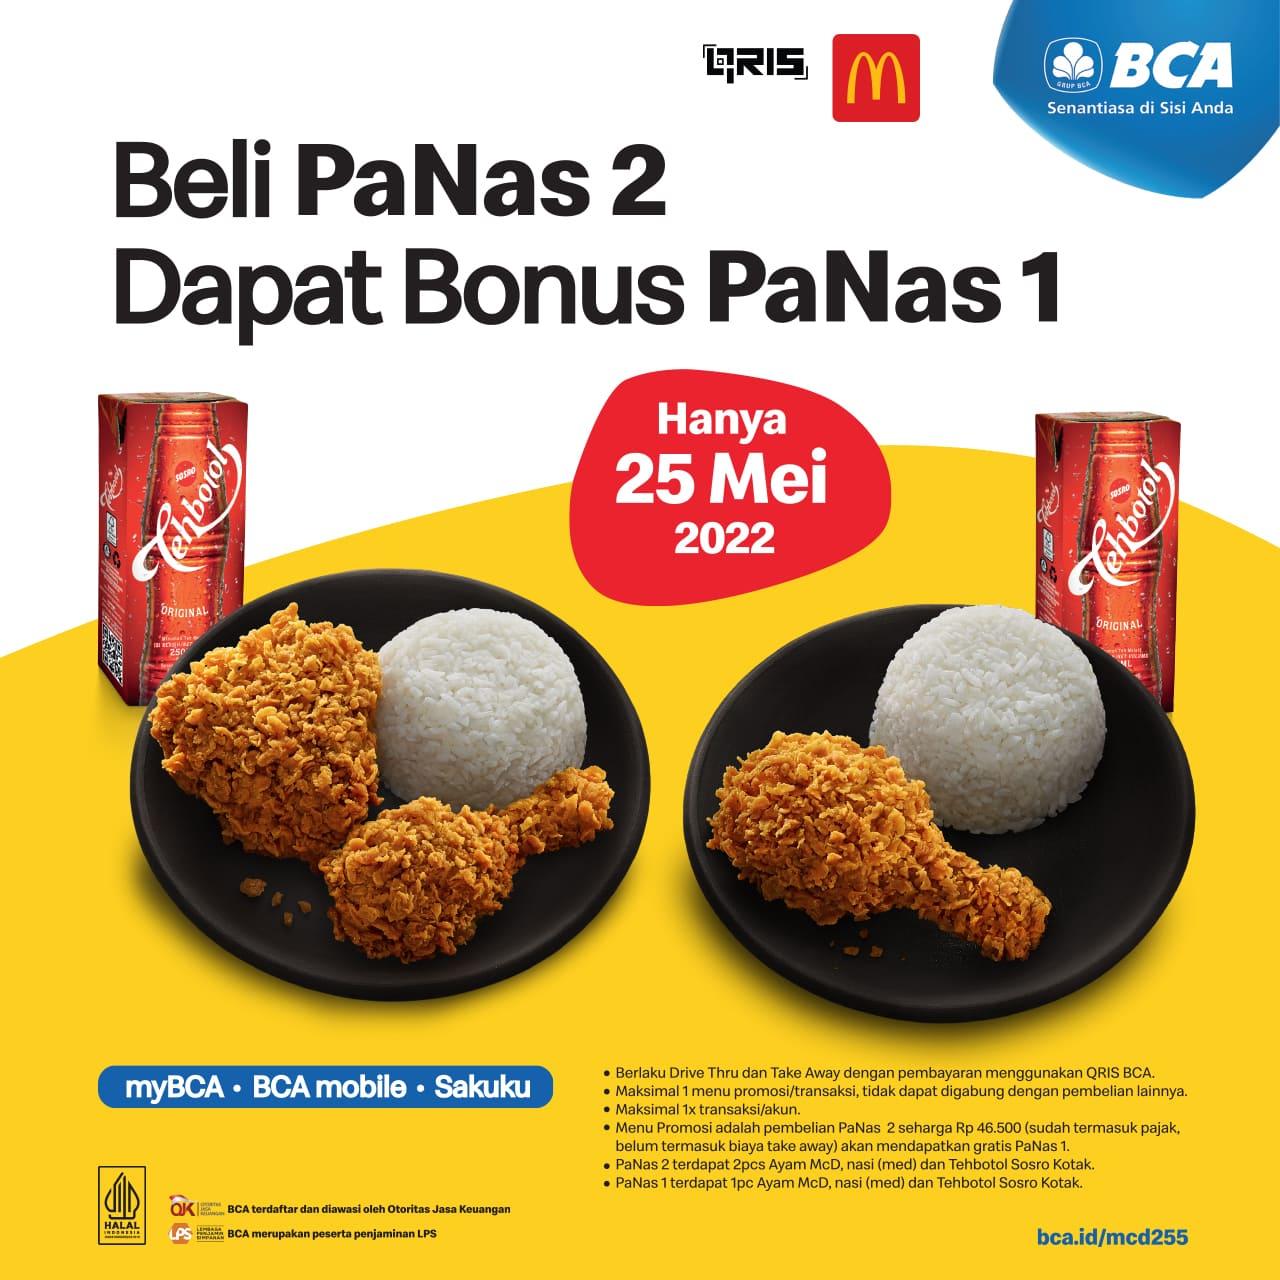 Promo McDonalds BCA - BELI 1 GRATIS 1 dengan QRIS BCA